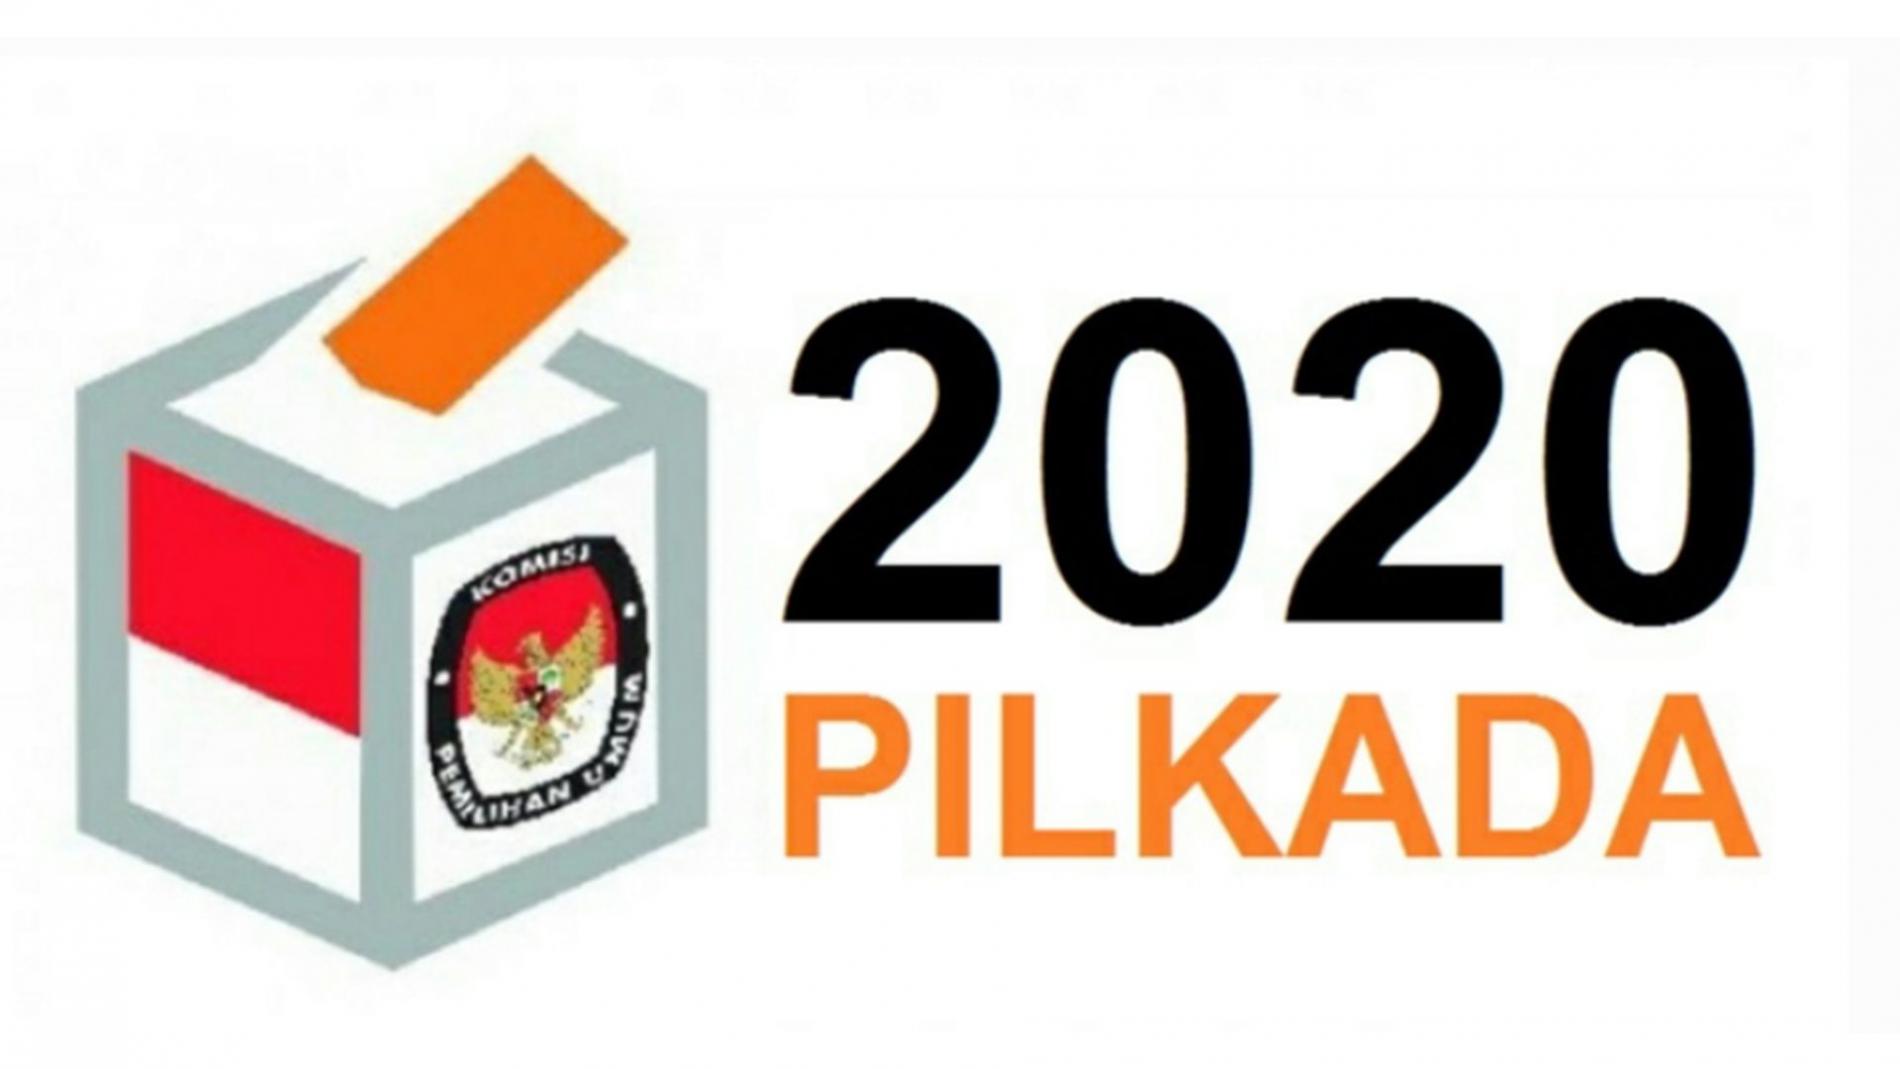 Pilkada 2020 Akan Digelar Pada 9 Desember Mendatang, Pemkab Bandung Minta ASN Tetap Netral di Pilkada